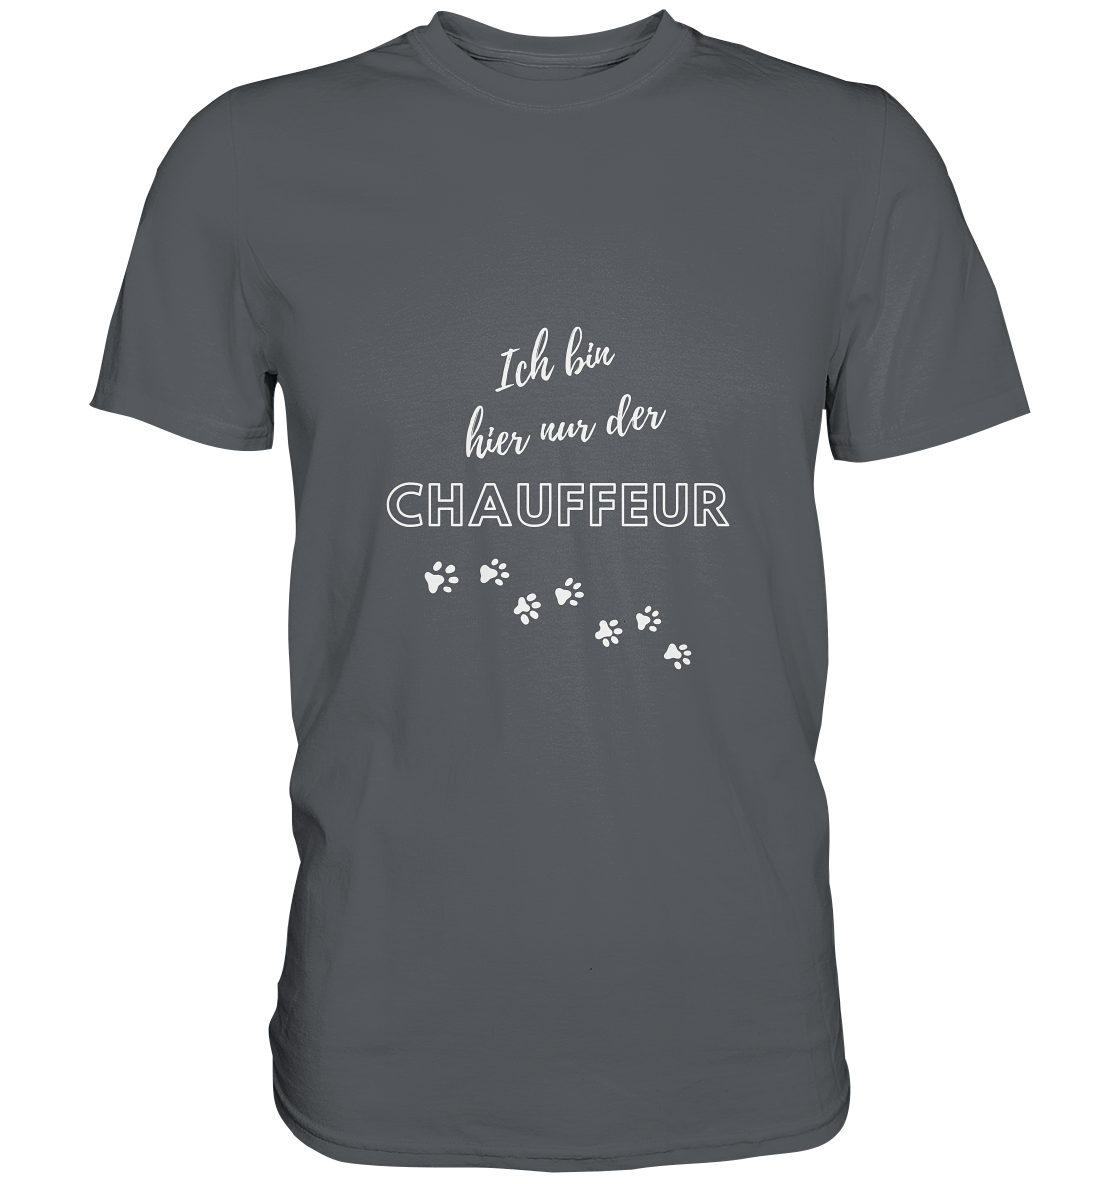 T-Shirt für Herrchen motorradfahrender Hunde: "Ich bin hier nur der Chauffeur." grau